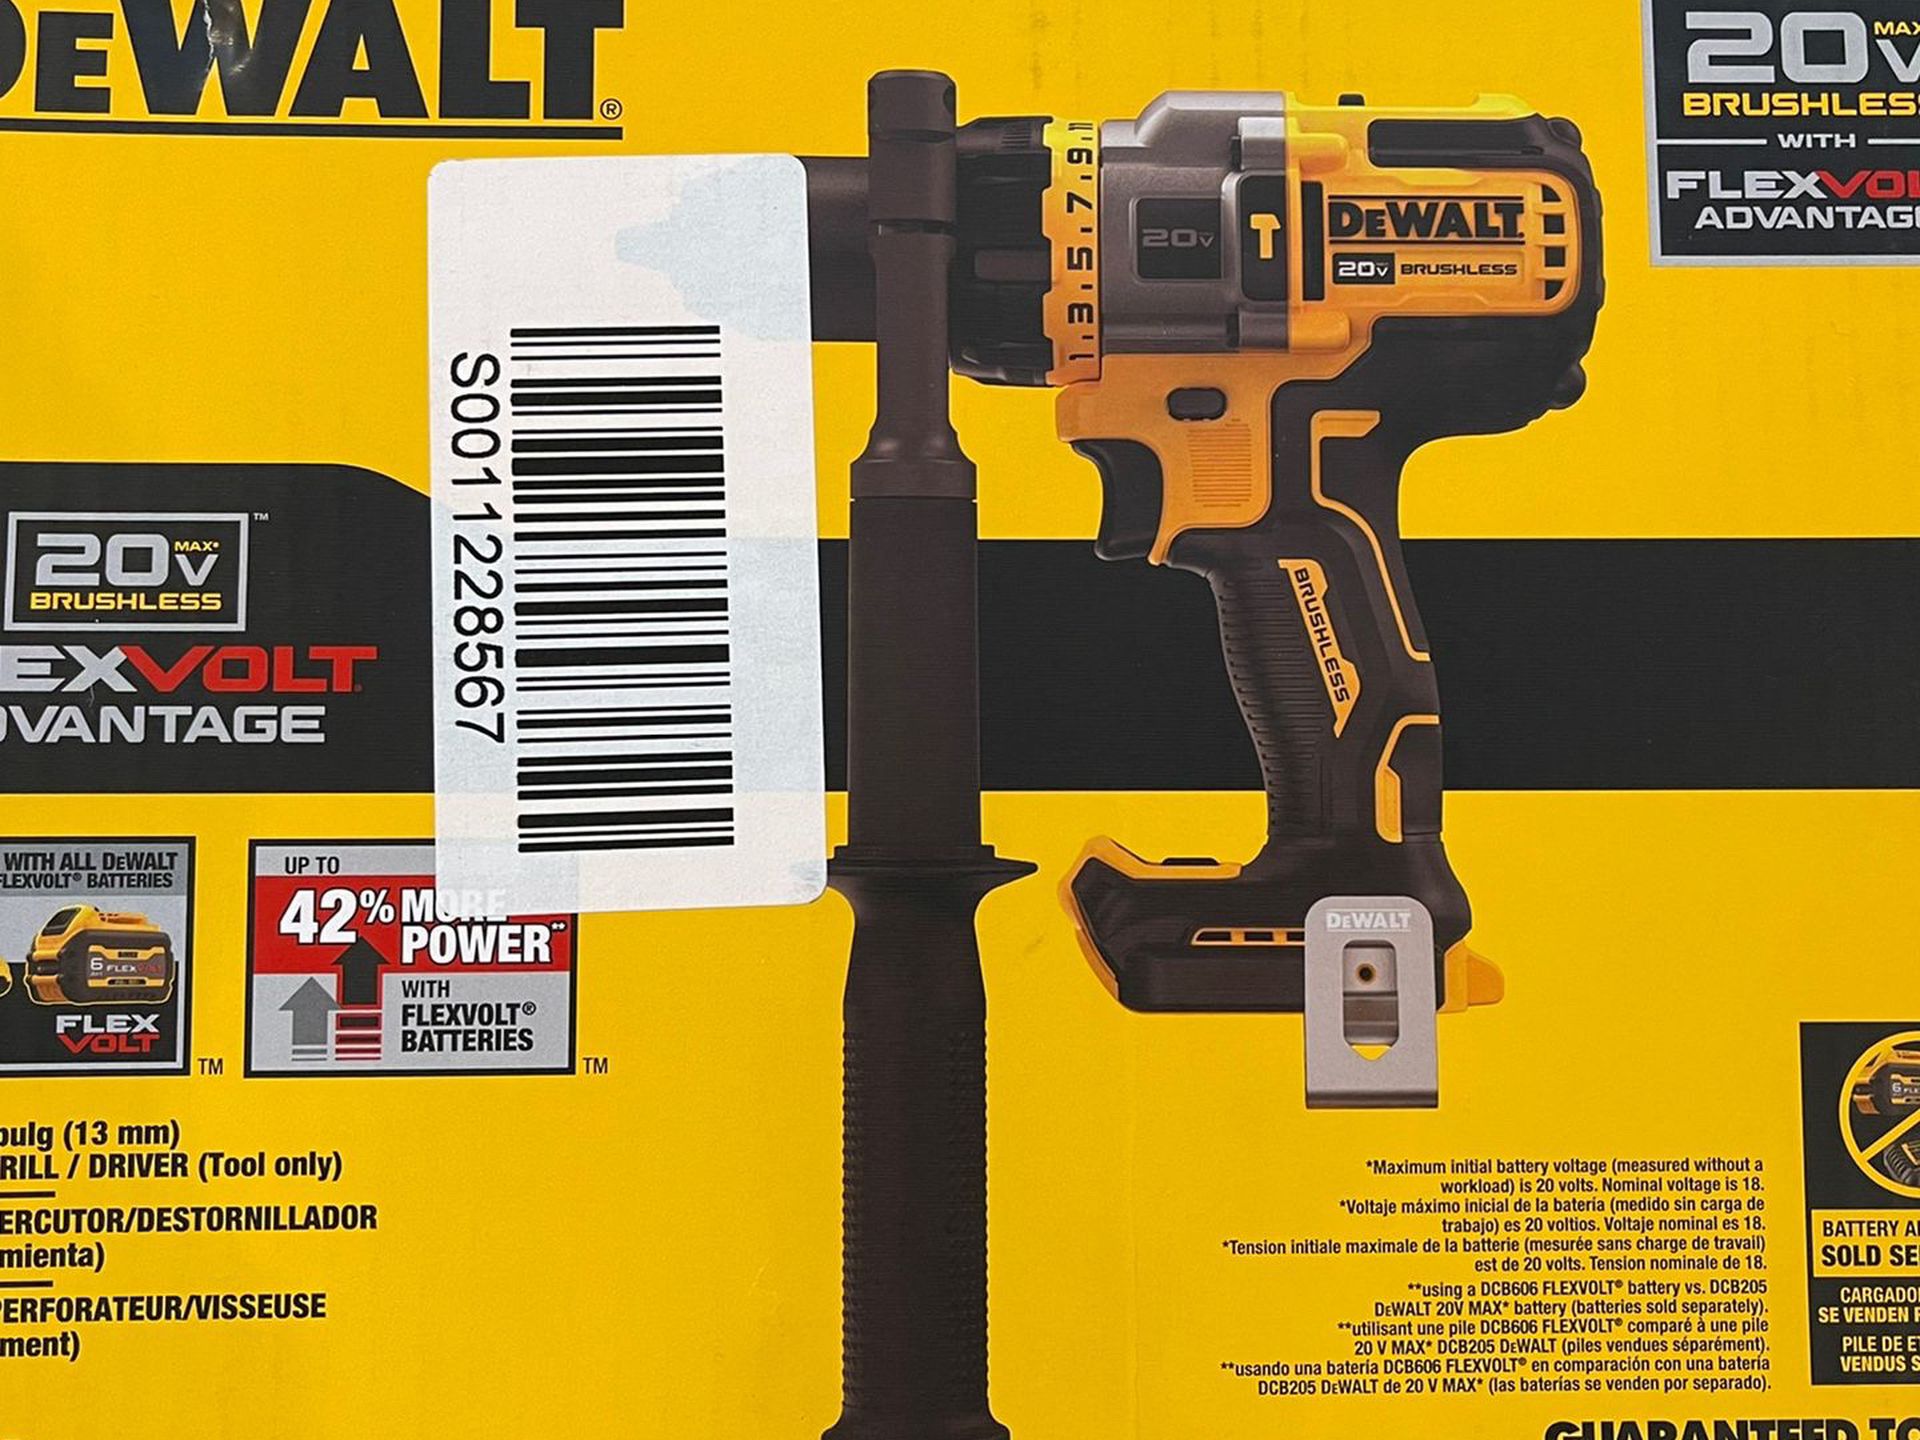 DEWALT FLEXVOLT ADVANTAGE 20V MAX Hammer Drill, Cordless, 1/2-Inch, Tool Only (DCD999B)